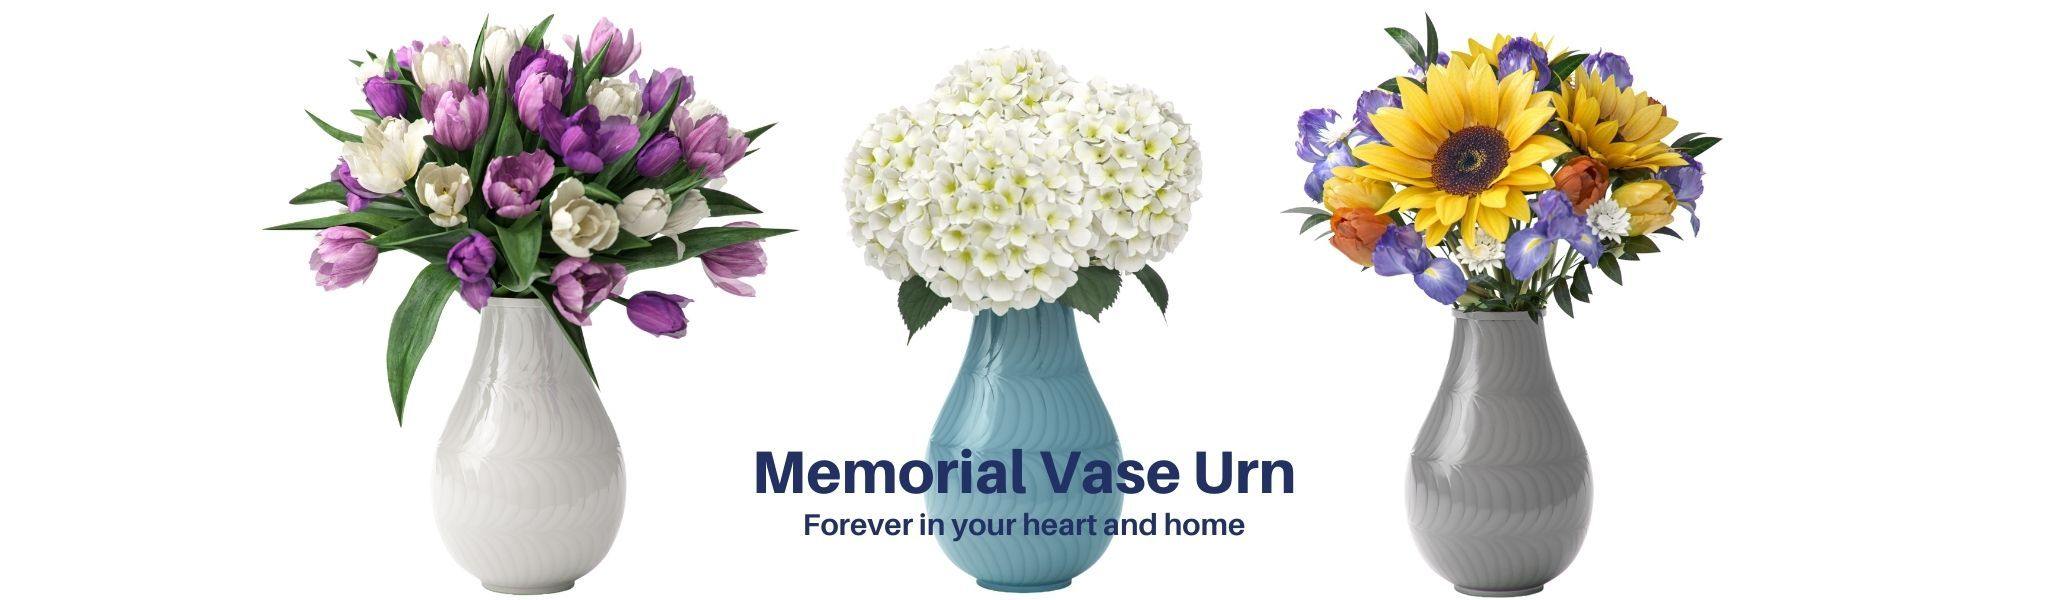 Cremation Urns - Memorial Vase Urn